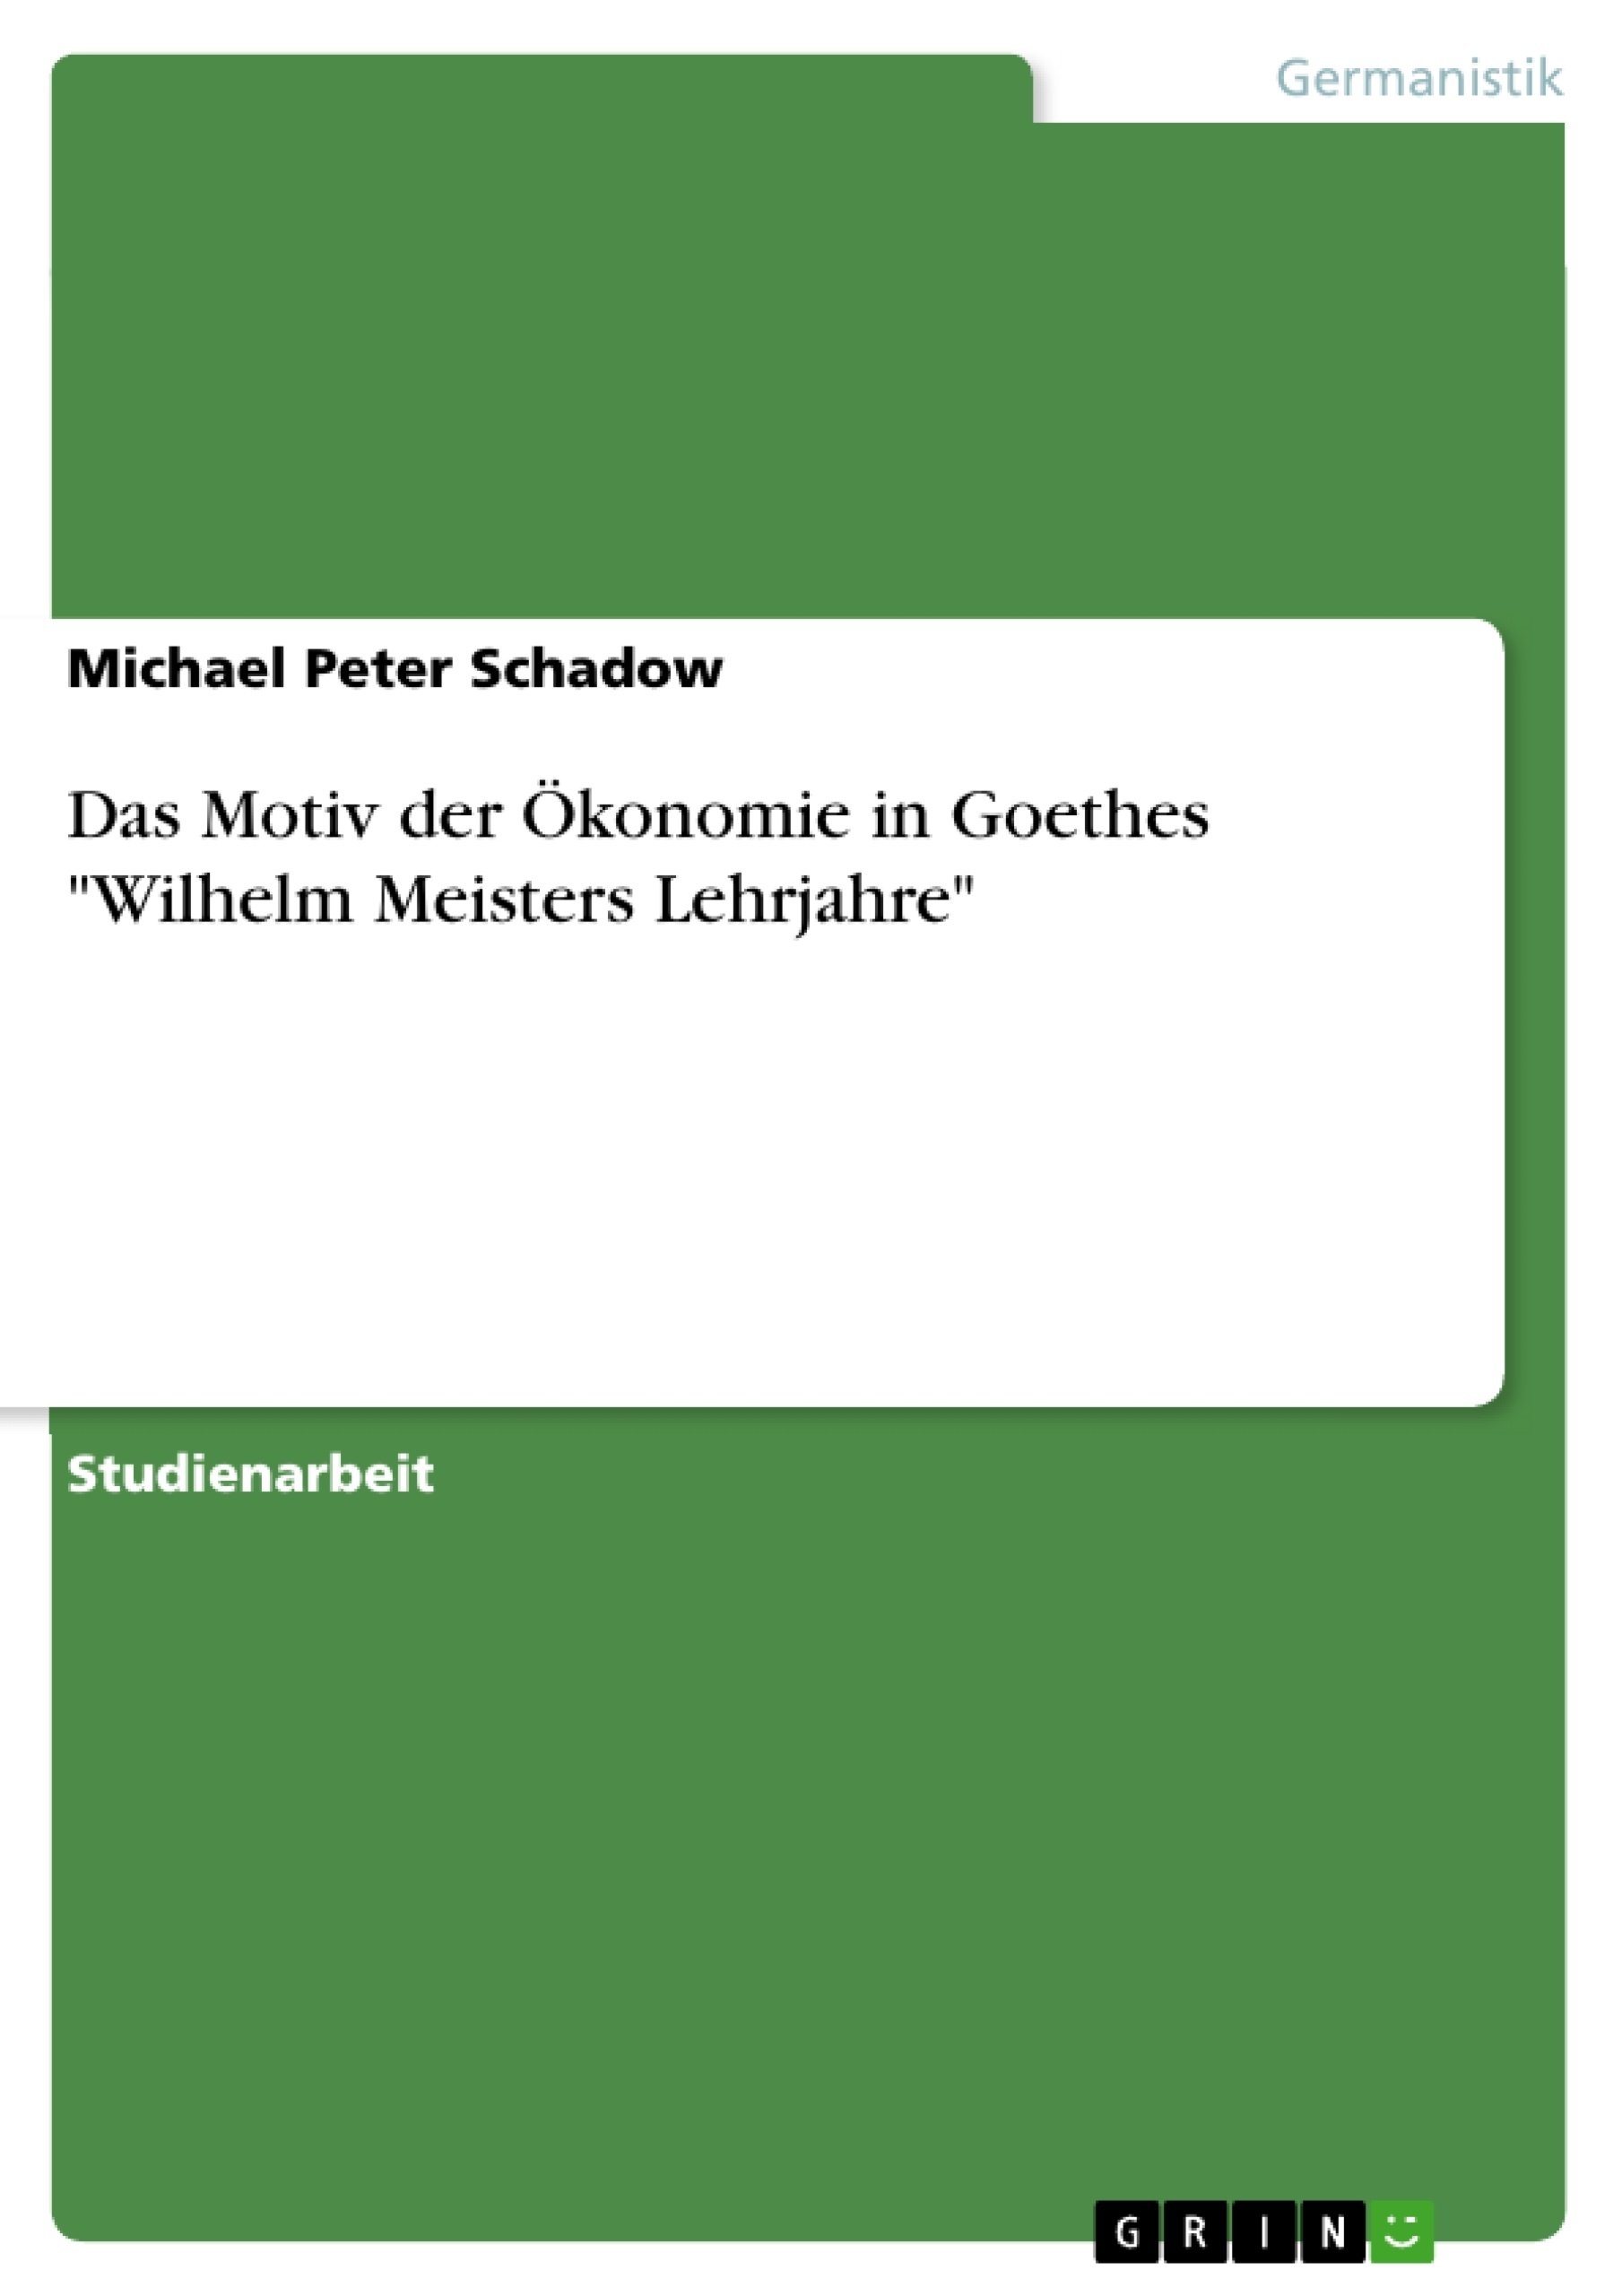 Title: Das Motiv der Ökonomie in Goethes "Wilhelm Meisters Lehrjahre"